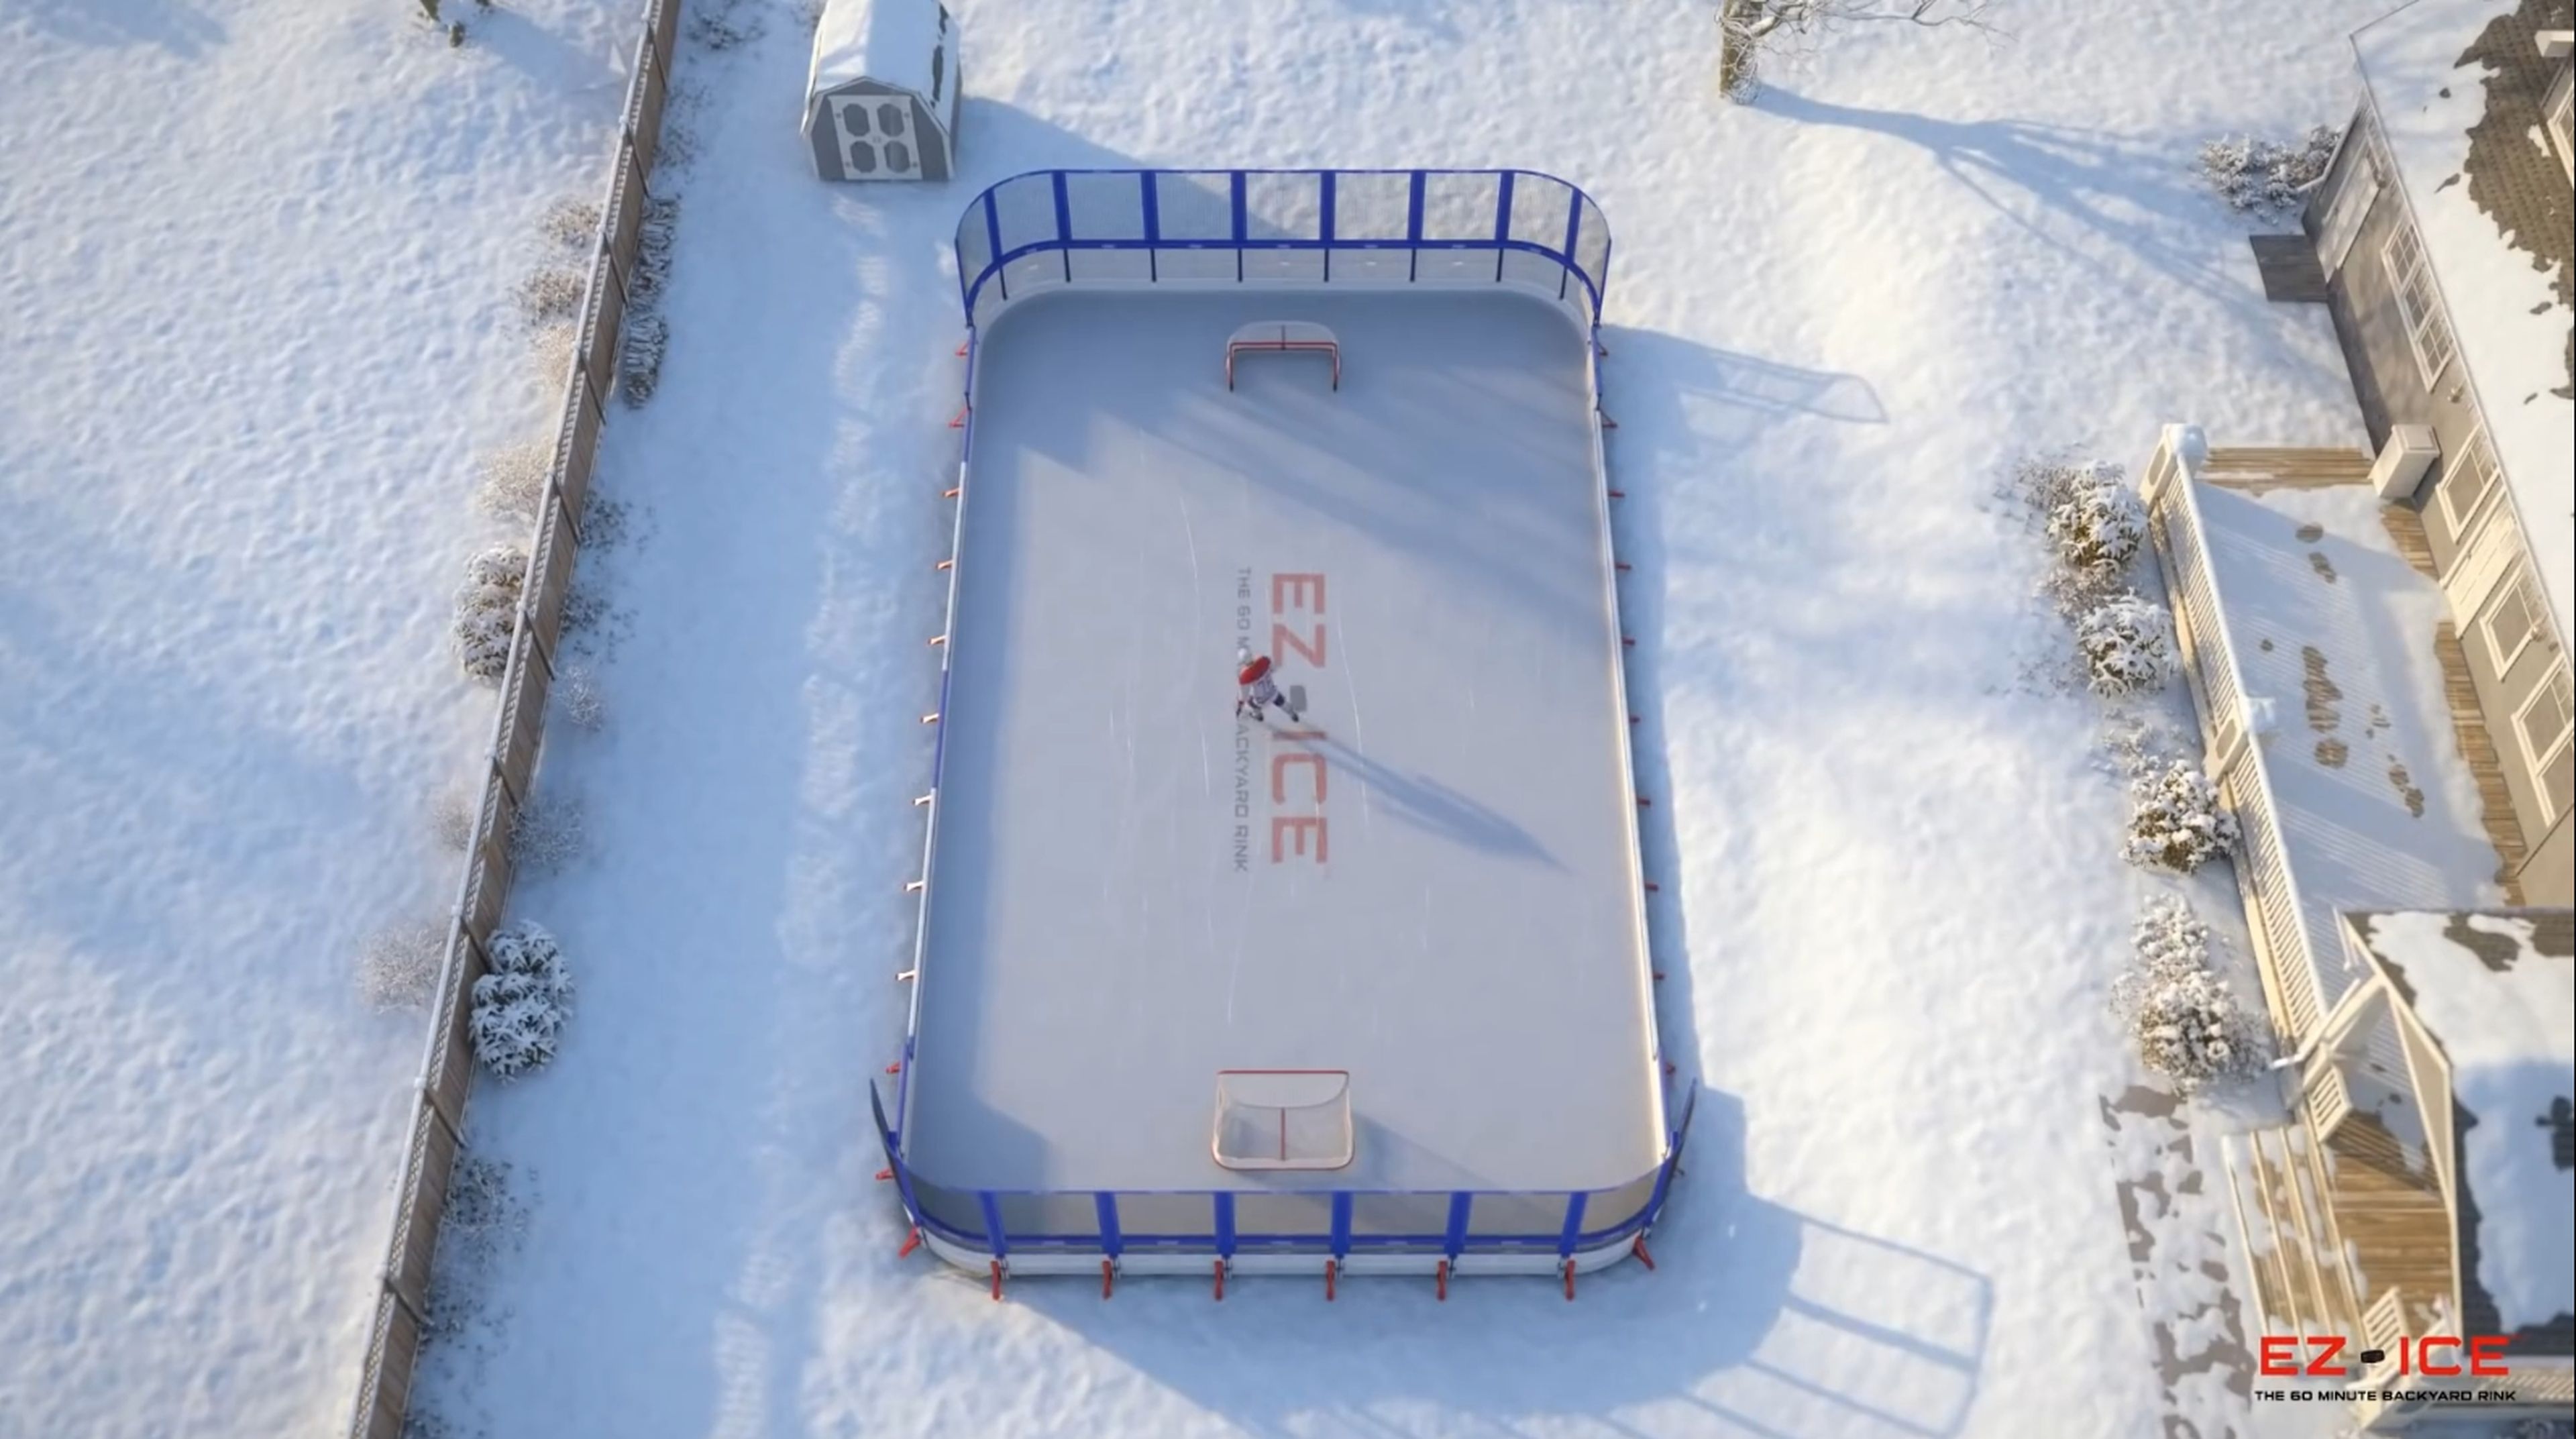 La pista de hockey sobre hielo profesional para el jardín que se monta en 60 minutos sin herramientas (vídeo)